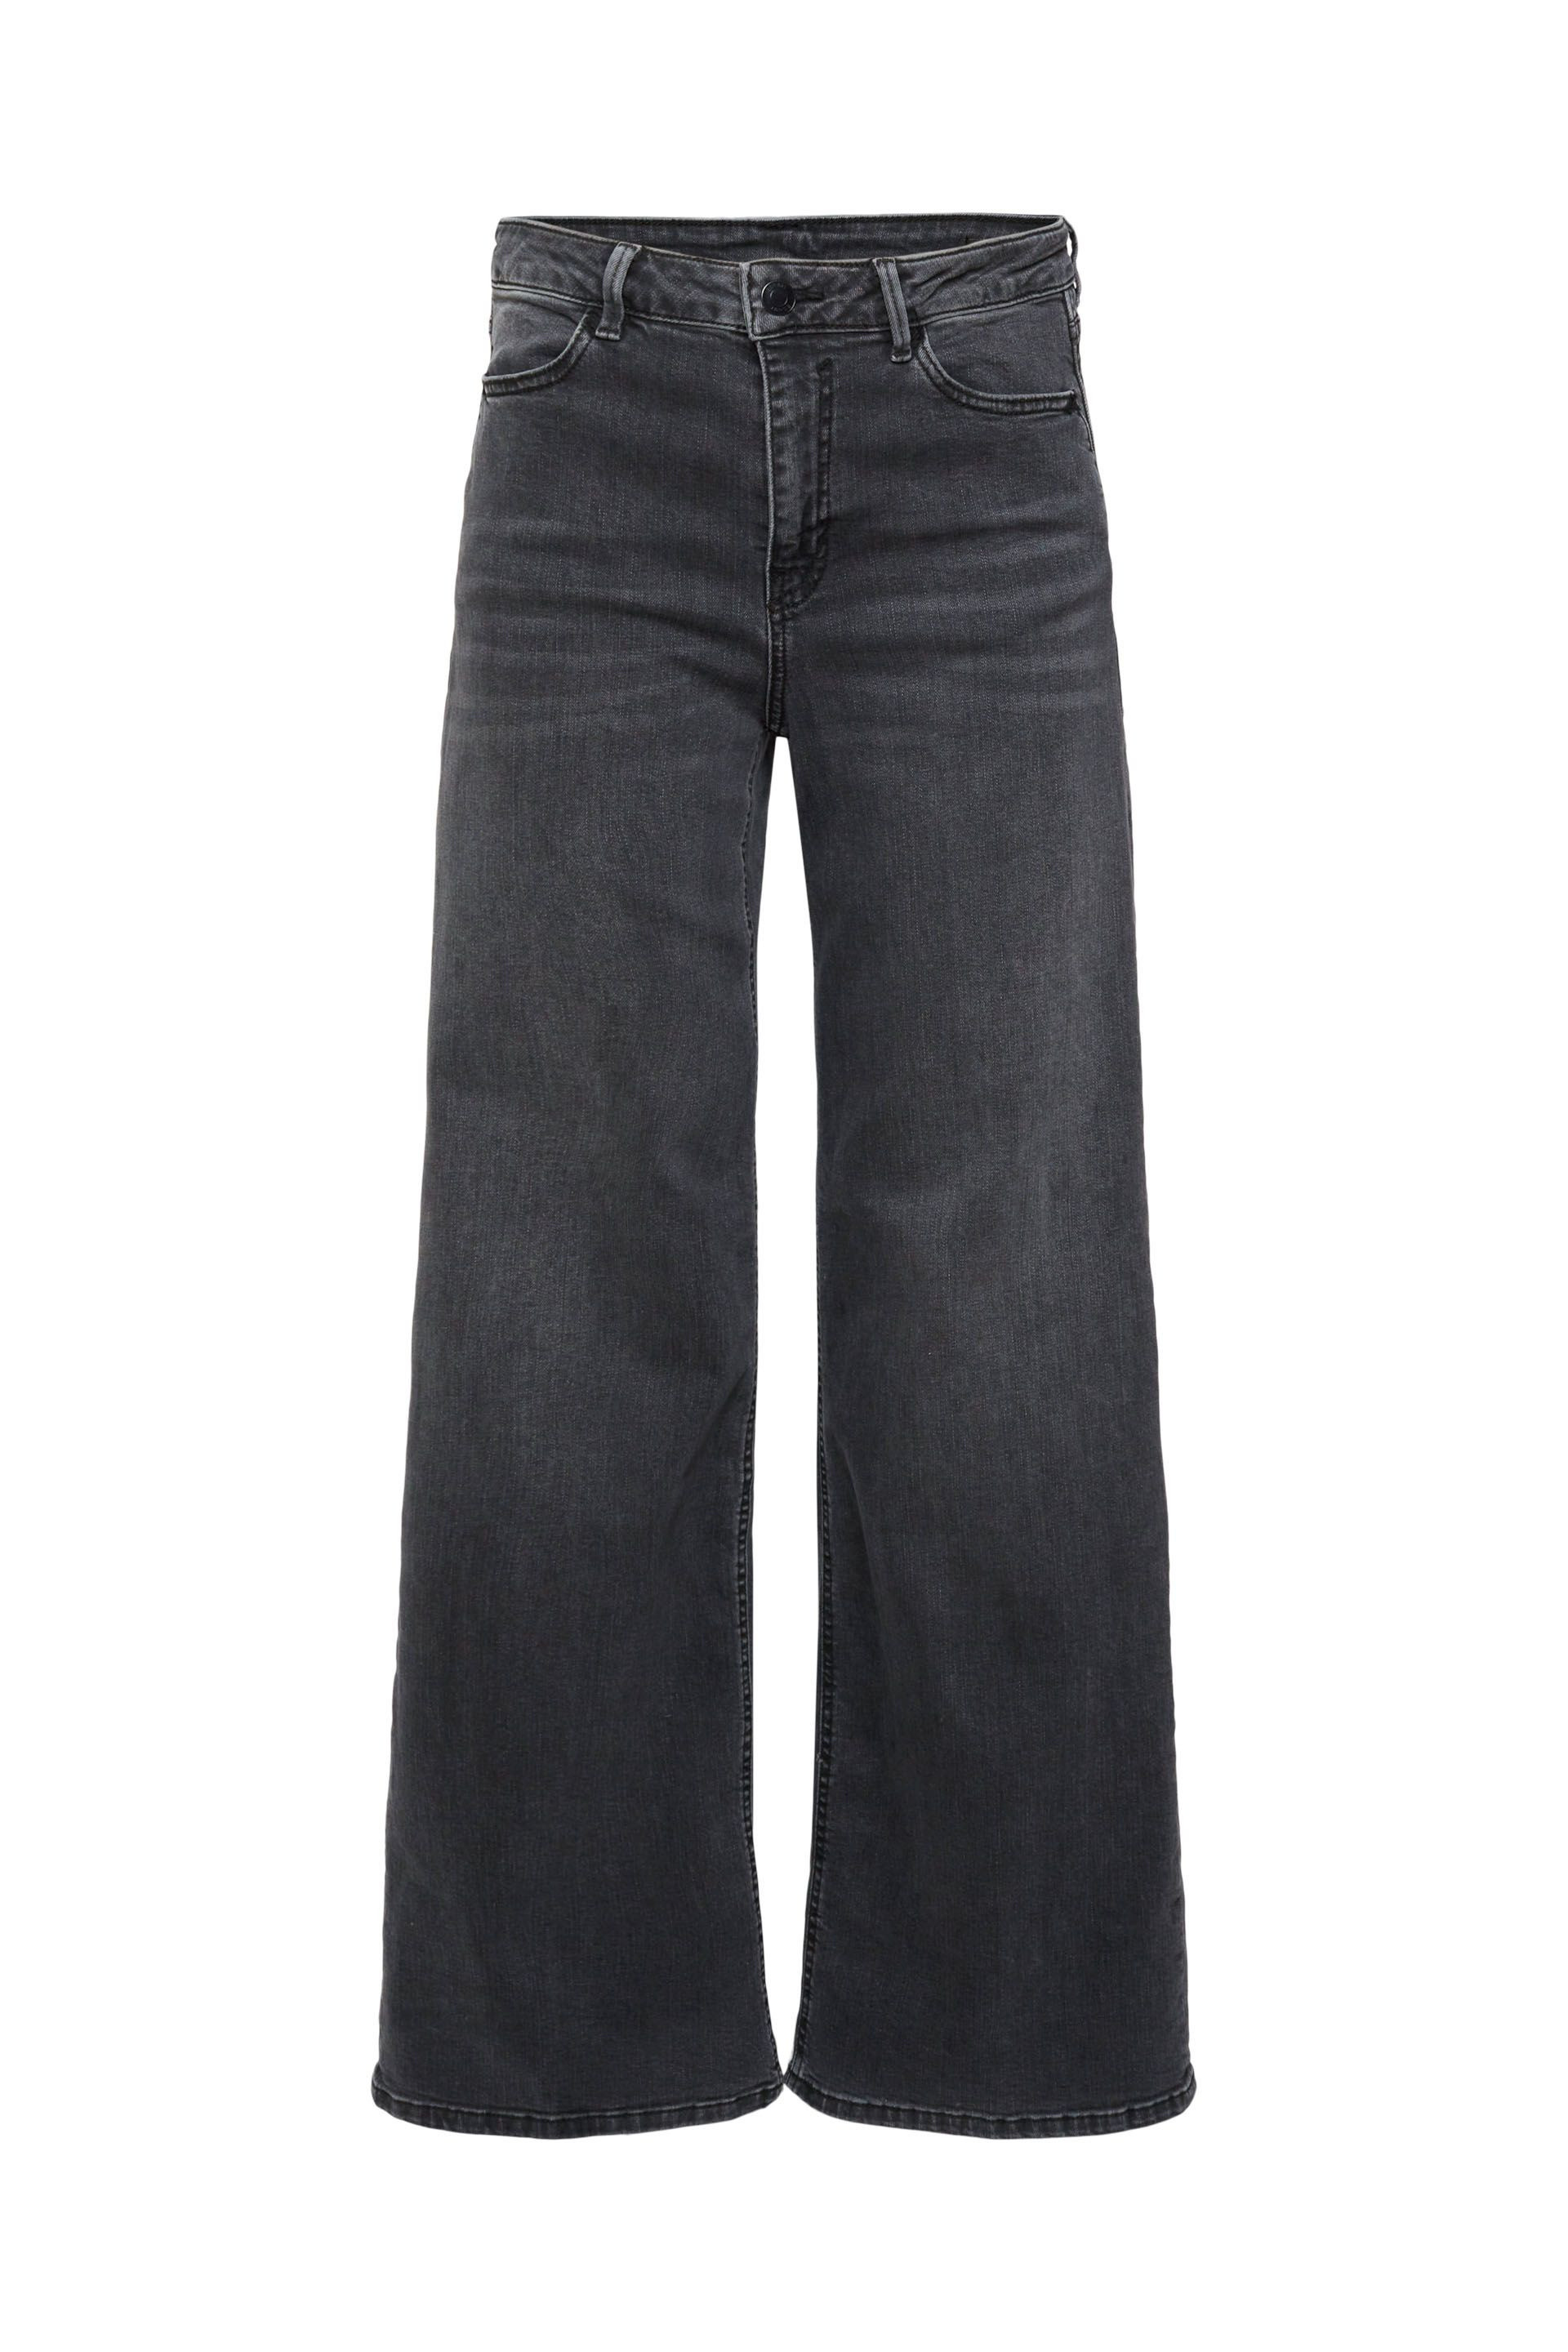 Esprit - Jeans a gamba larga, Nero, large image number 0